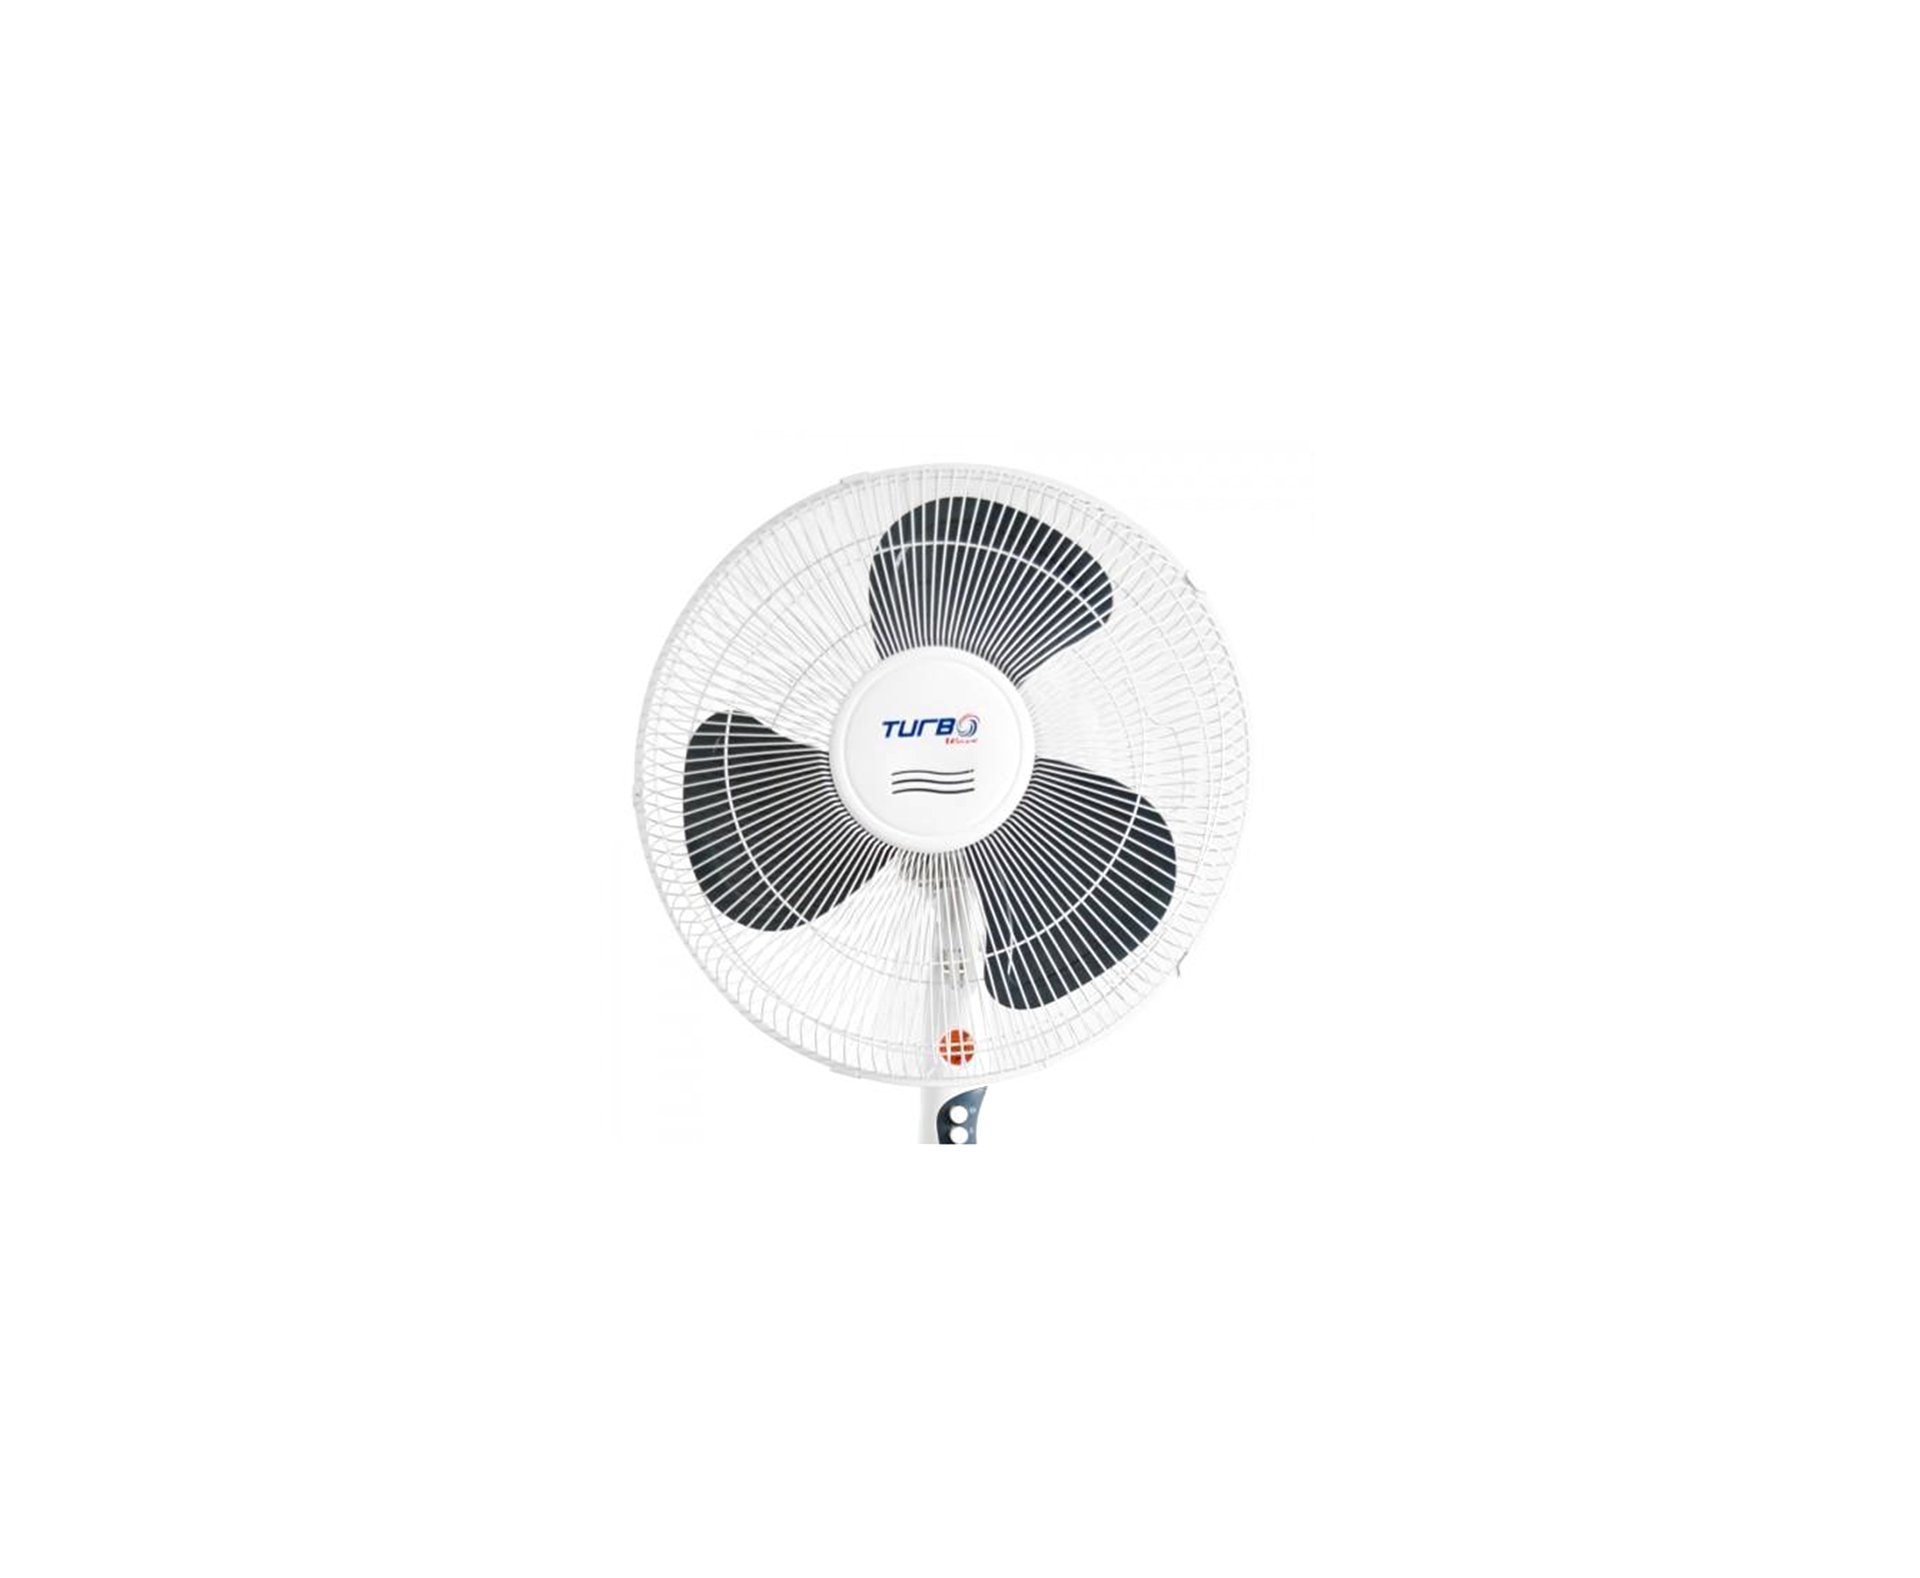 Ventilador Oscilante De Coluna 40cm - Us16034 110v - Turbo Mix